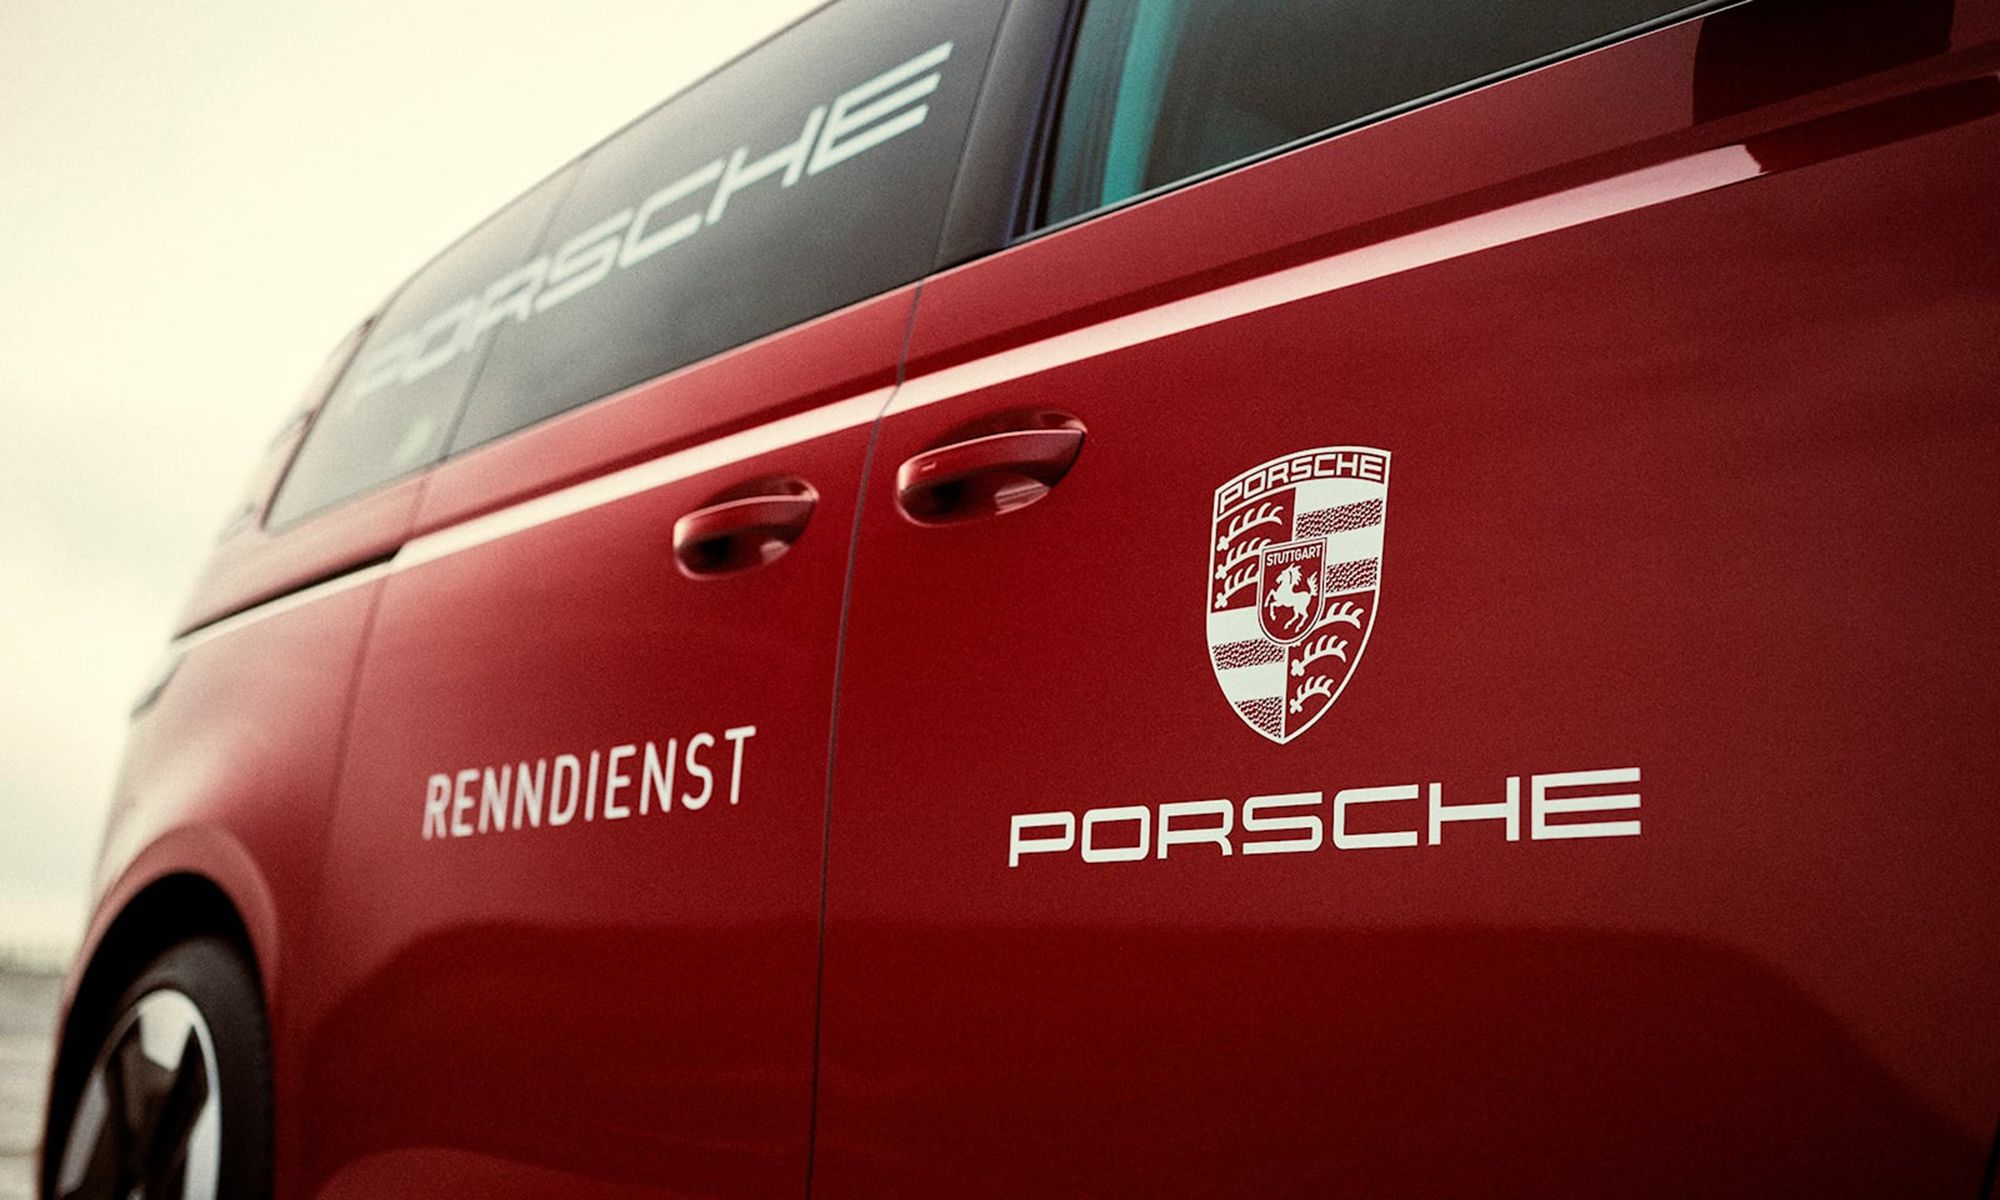 Porsche revive sus primeros años de gloria, gracias a la reinterpretación de las Renndienst, ahora como Volkswagen ID.Buzz eléctricas.